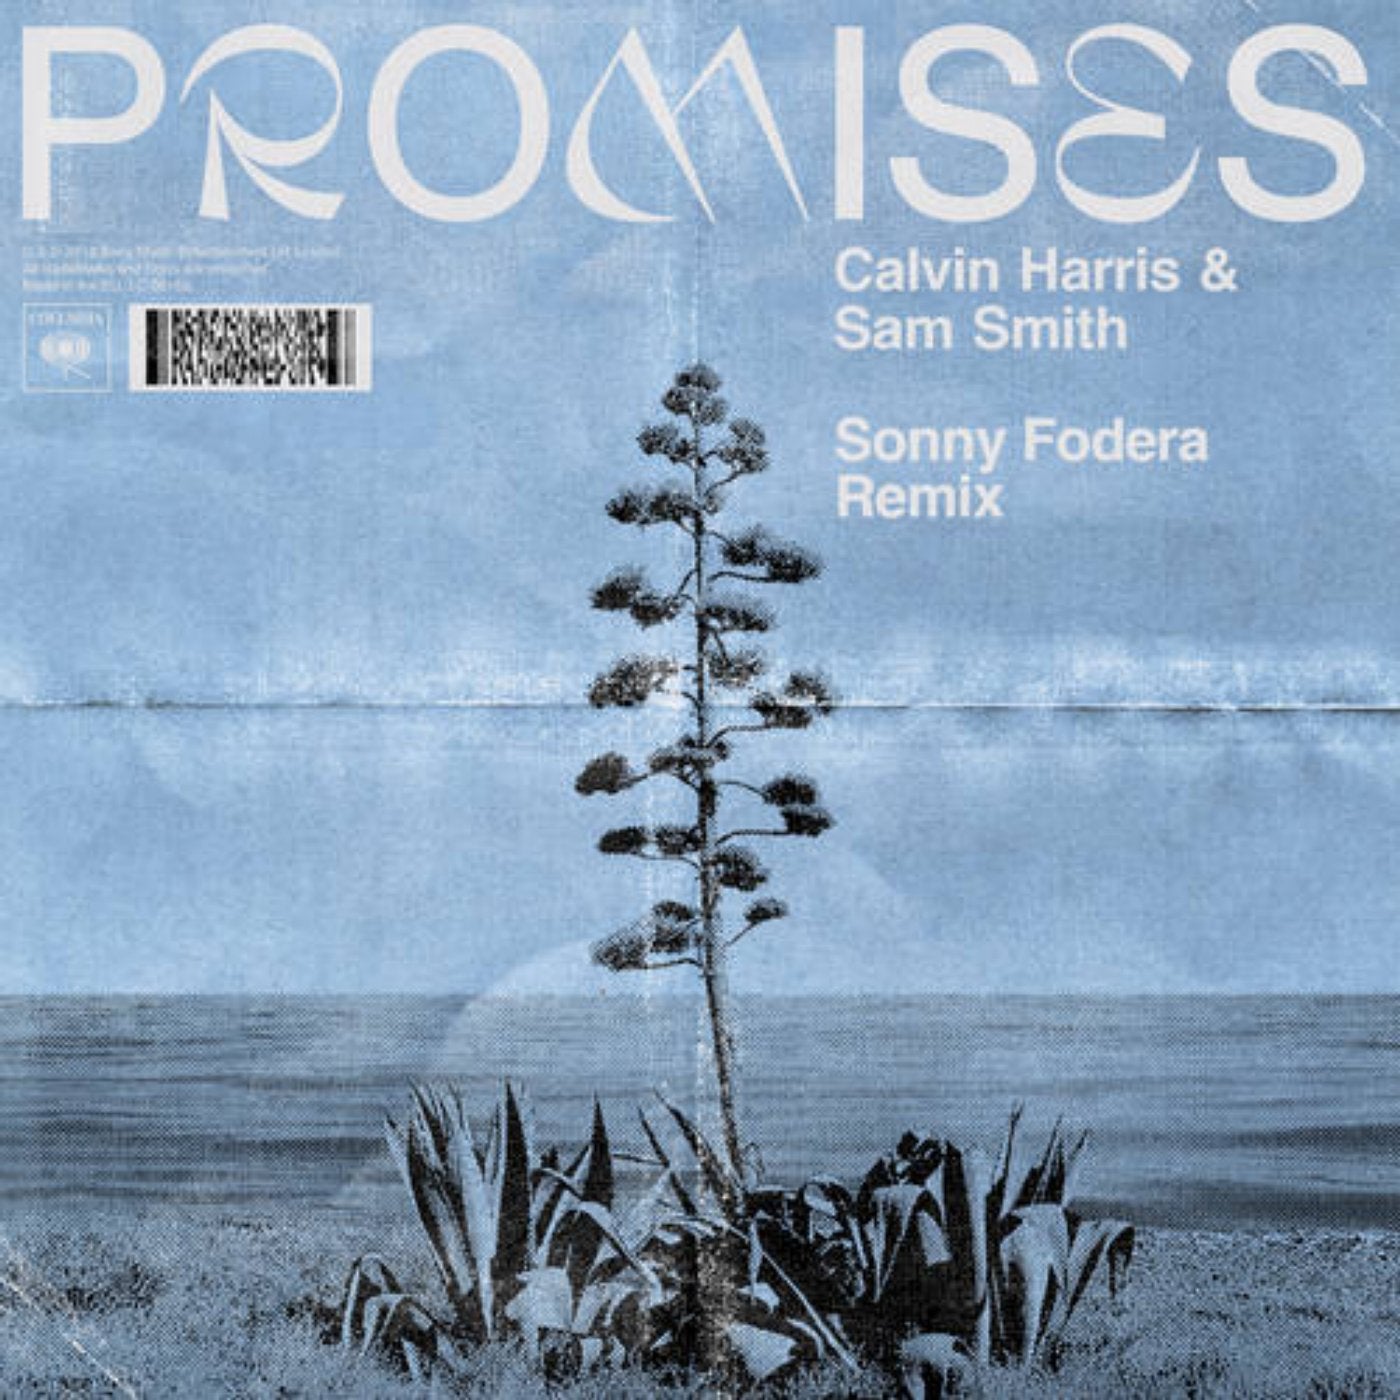 Calvin Harris Music Download Beatport Calvin harris ragnbone man giant extended mix. calvin harris music download beatport